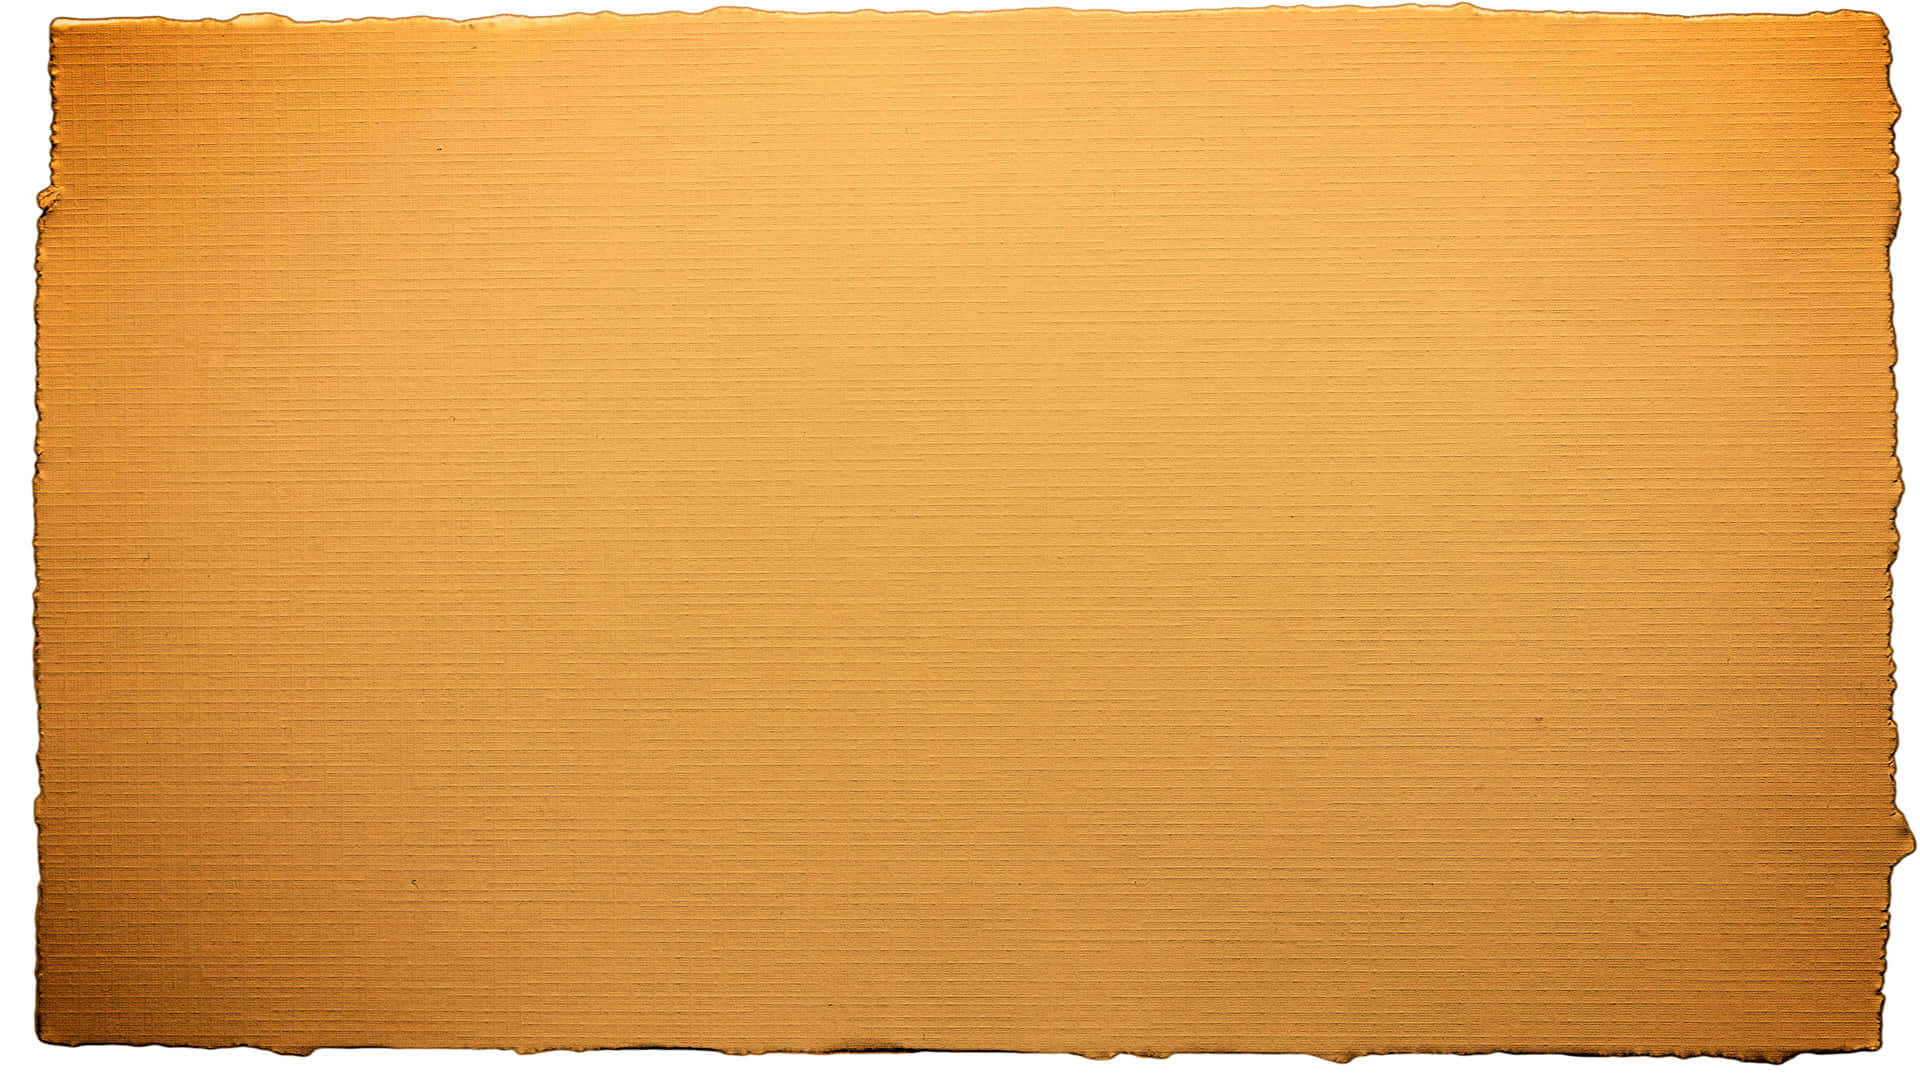 Zerissenespapier Gelblich-braune Farbe Wallpaper